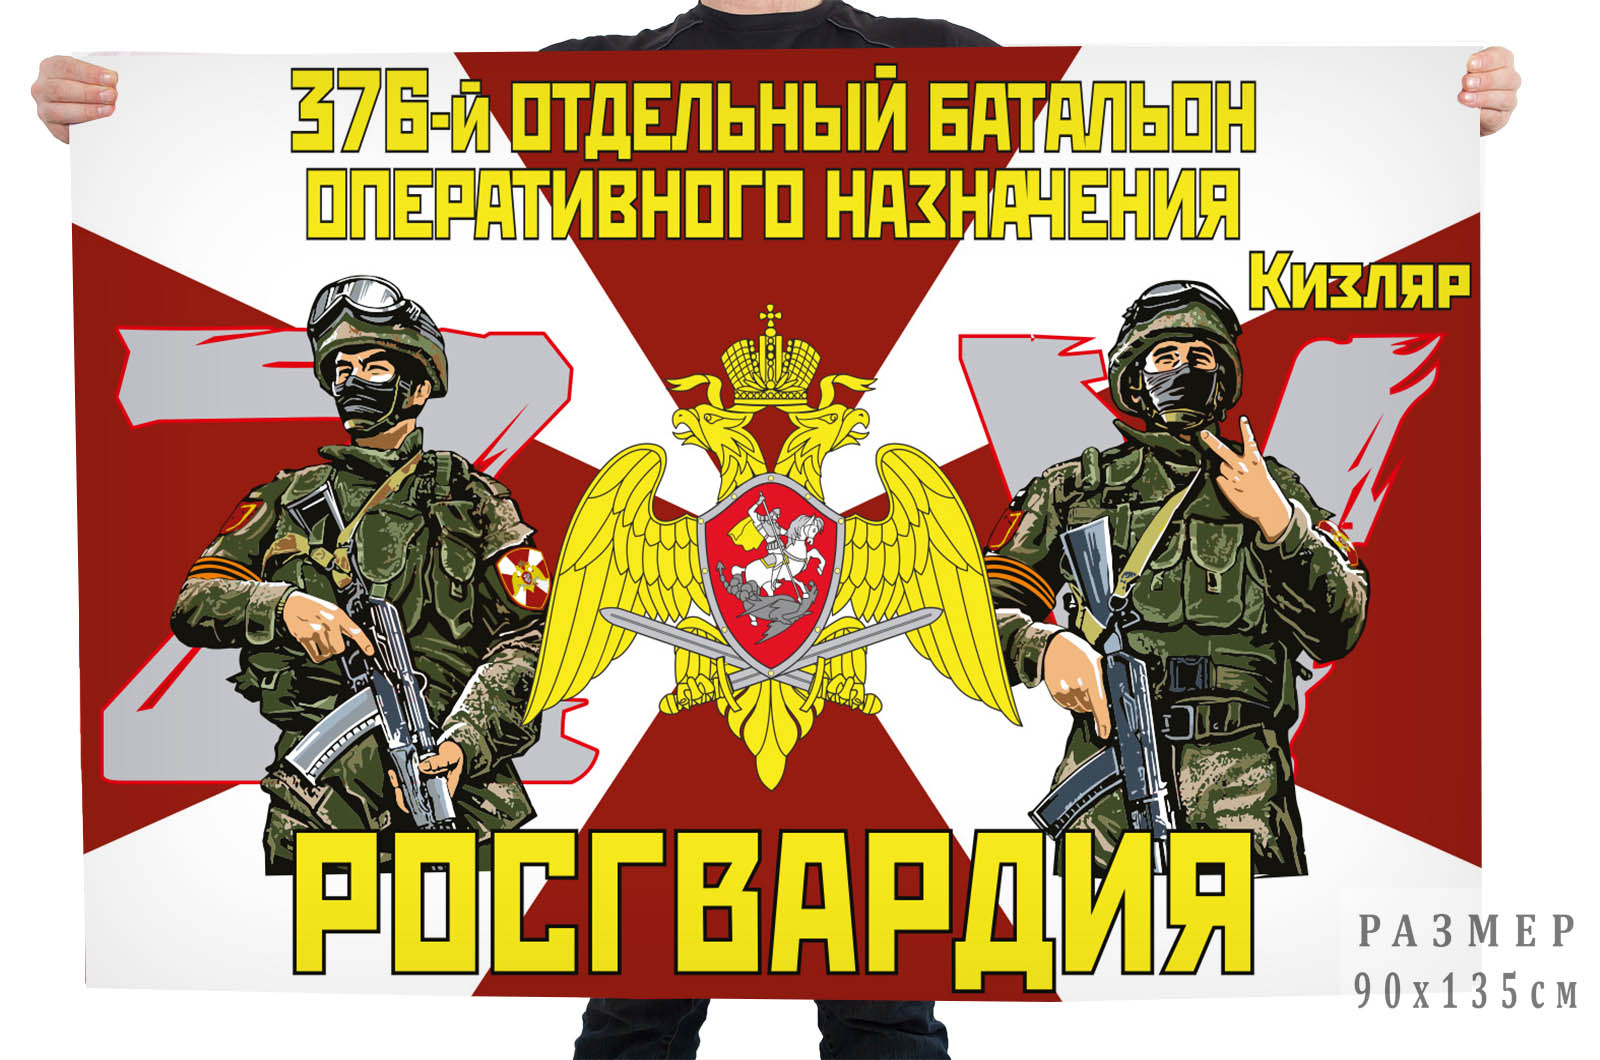 Флаг 376 отдельного батальона оперативного назначения Росгвардии "Спецоперация Z"